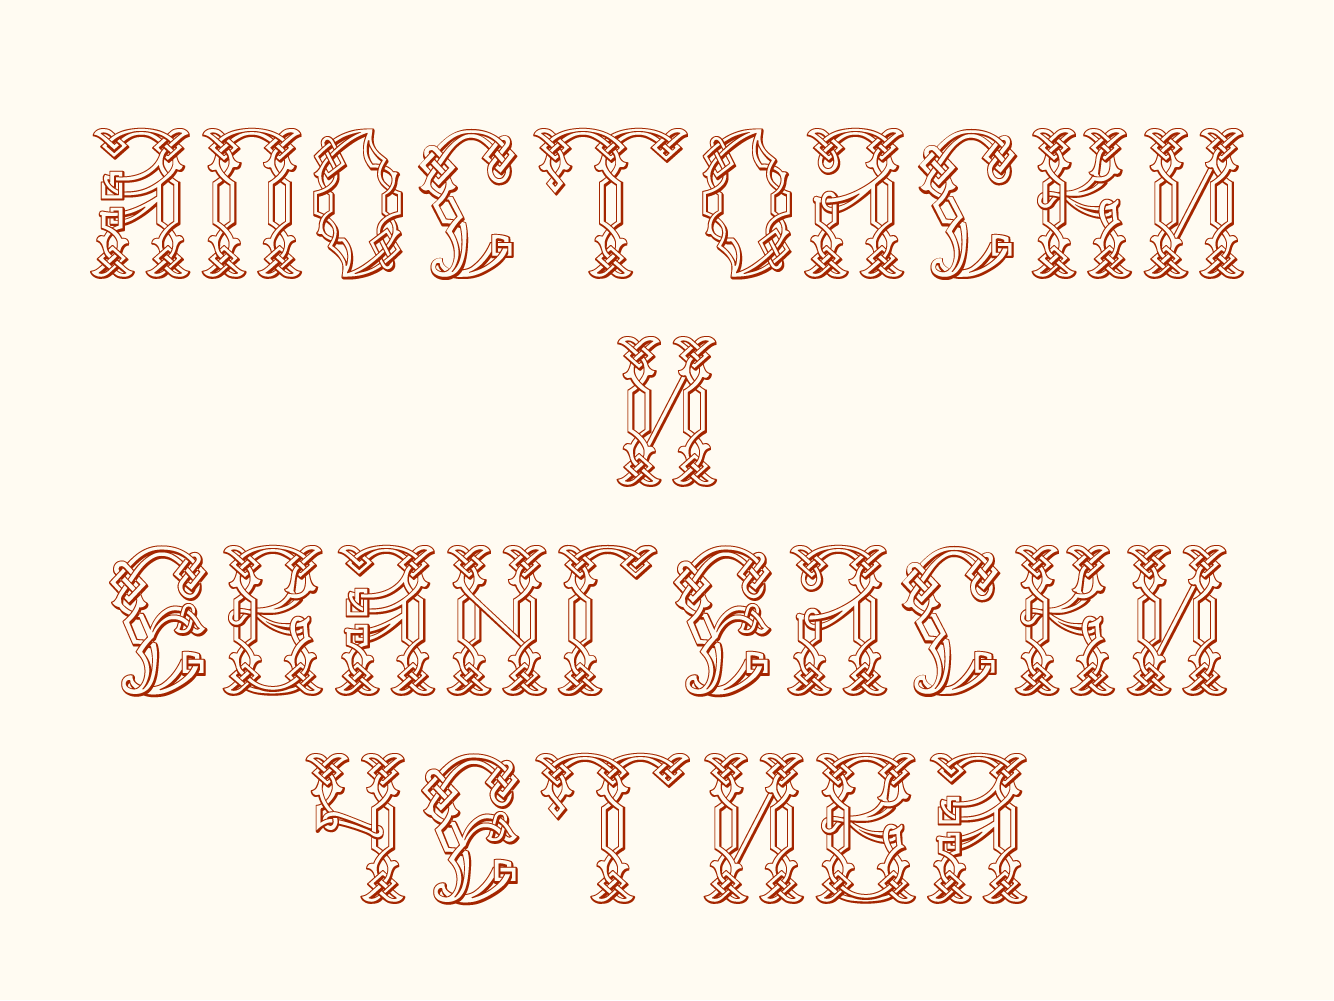 Beispiel einer Vertograd Unicode-Schriftart